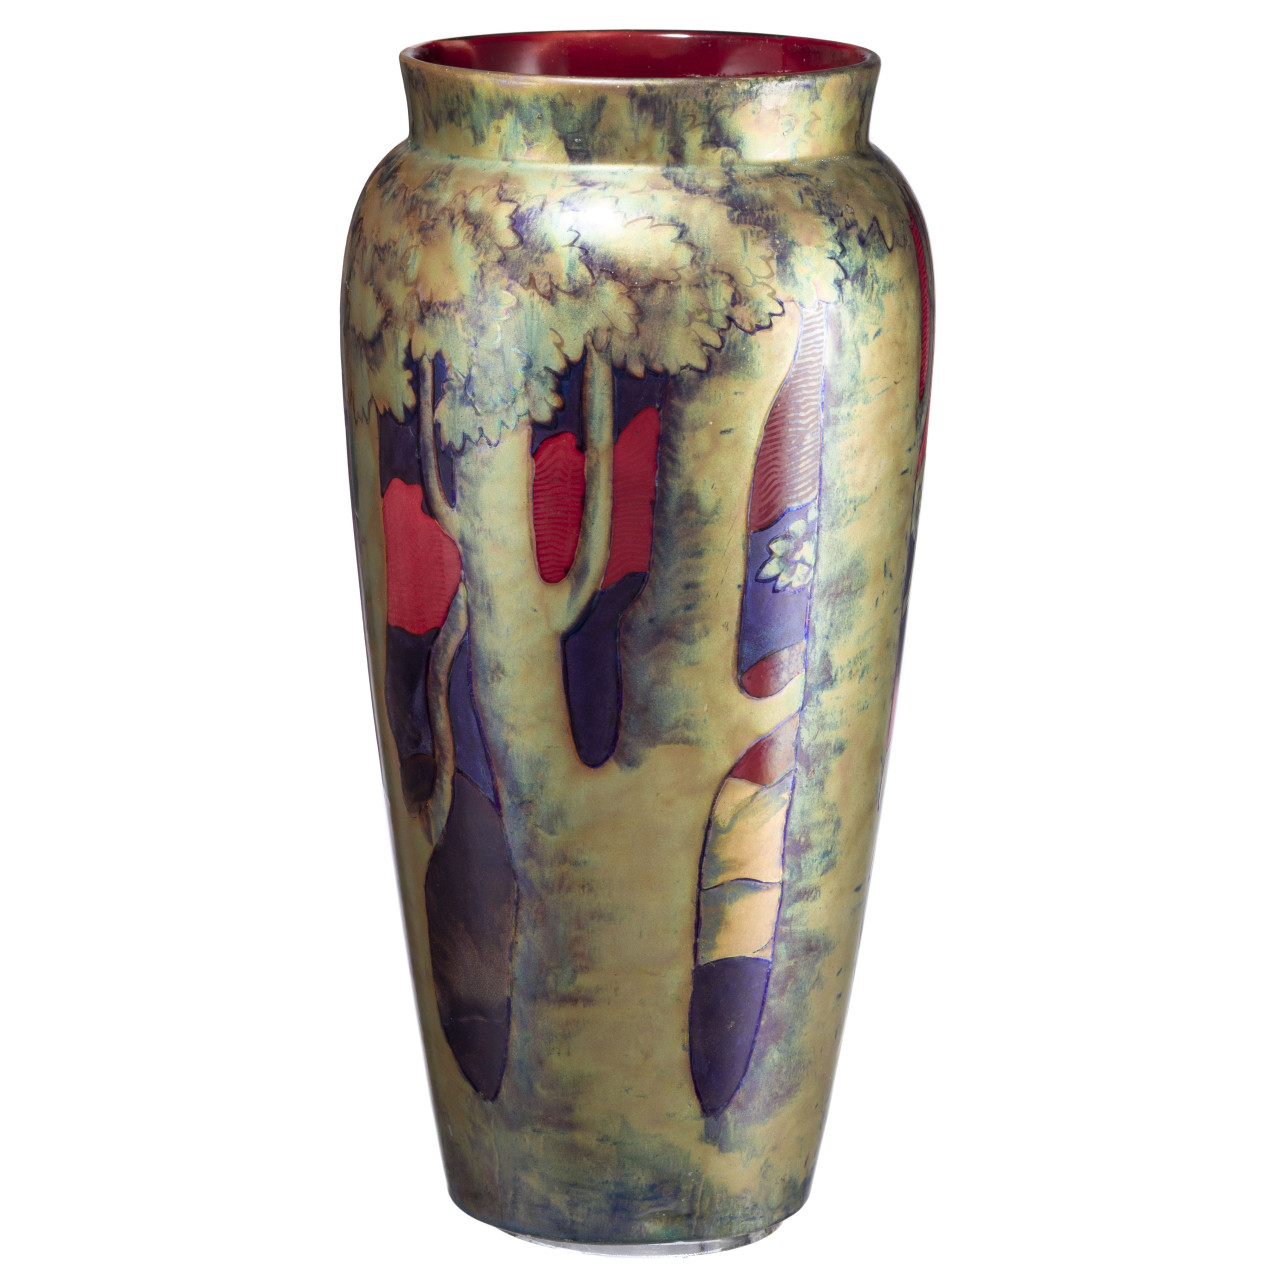 Los-376_Grosse-Jugendstil-Vase-mit-Landschaftsszene-Pecs_Zsolnay-Entwurf-wohl-von-Sikorski-um-1900-Hohe-ca-35-cm-Startpreis-8-000-EURJ7D6wLR0GqSIT